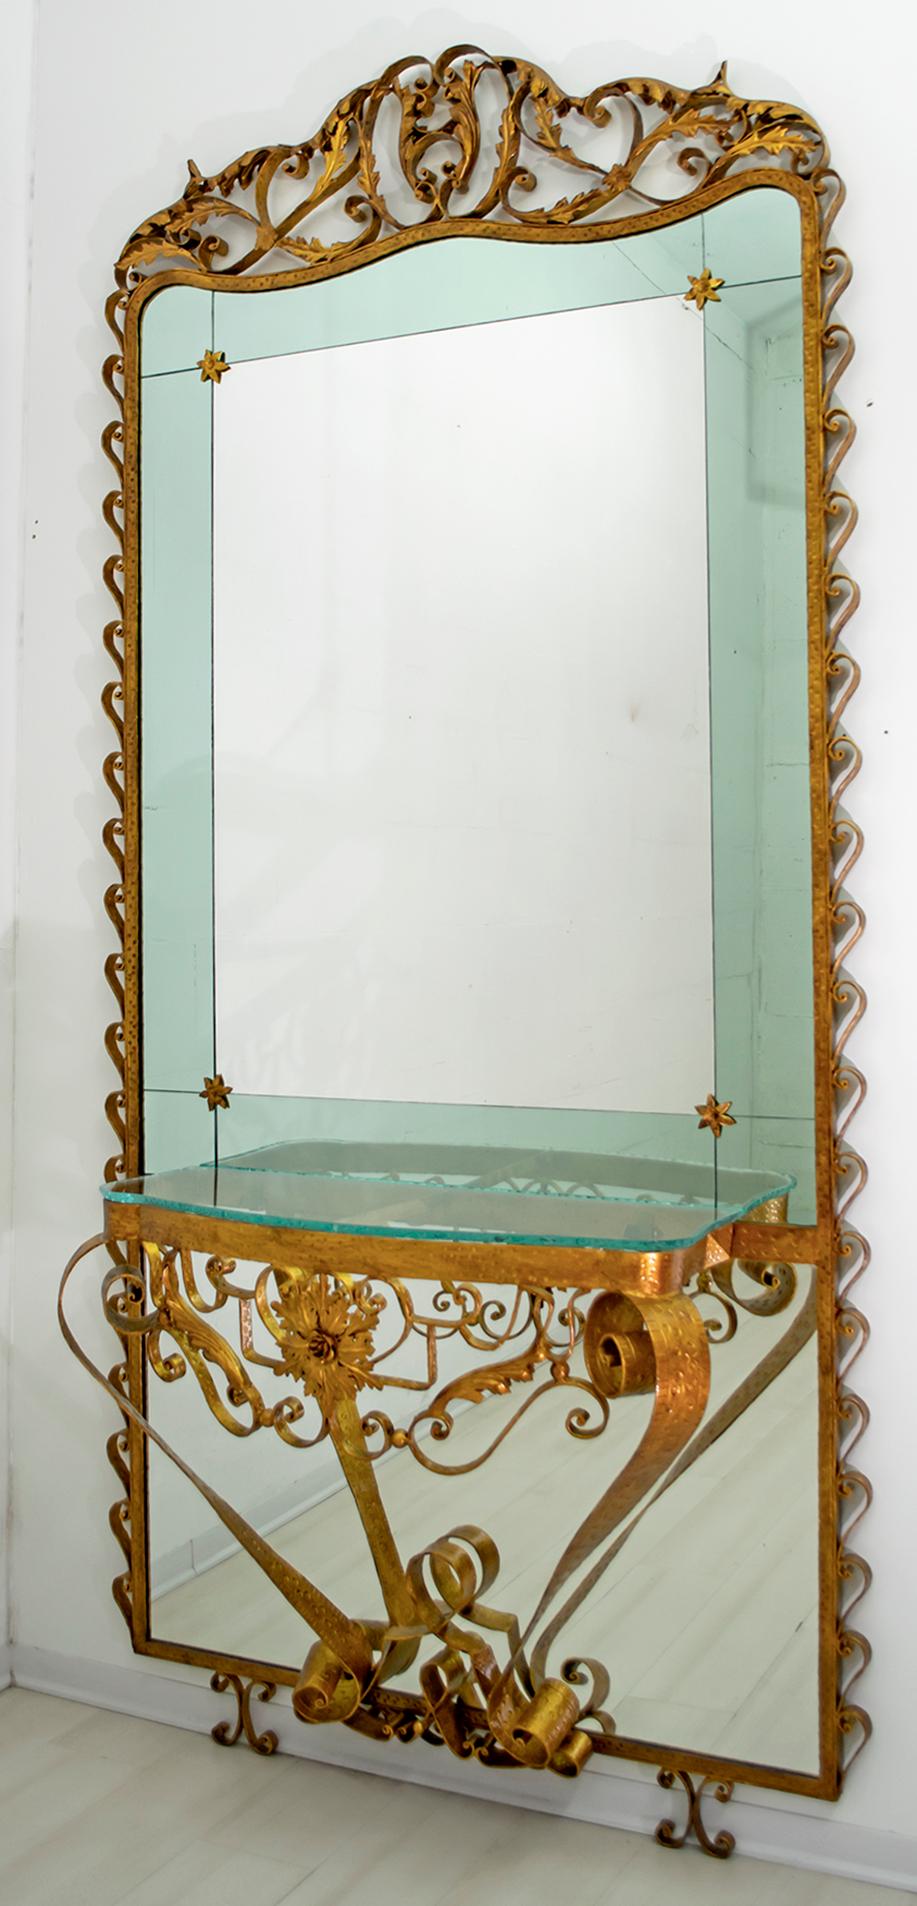 Beau, grand et majestueux miroir d'entrée avec console, sophistiqué, élégant, conçu par Pier Luigi Colli, Italie, Turin 1950
Le cadre est en fer forgé, fabriqué à la main, le miroir est en deux couleurs, vert et transparent, le plateau de la